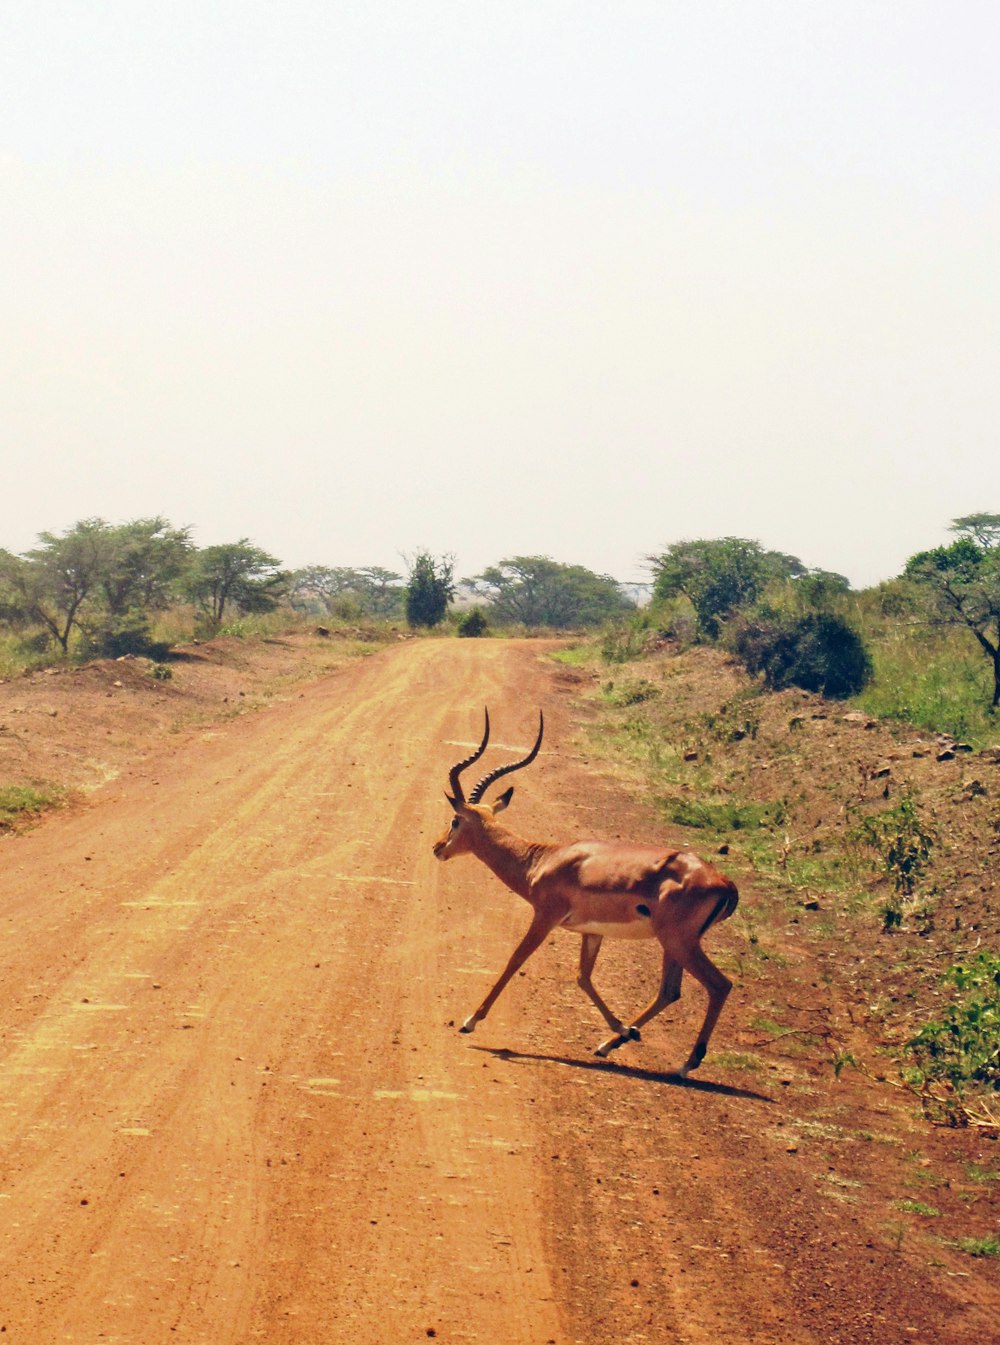 gazelle on dirt road